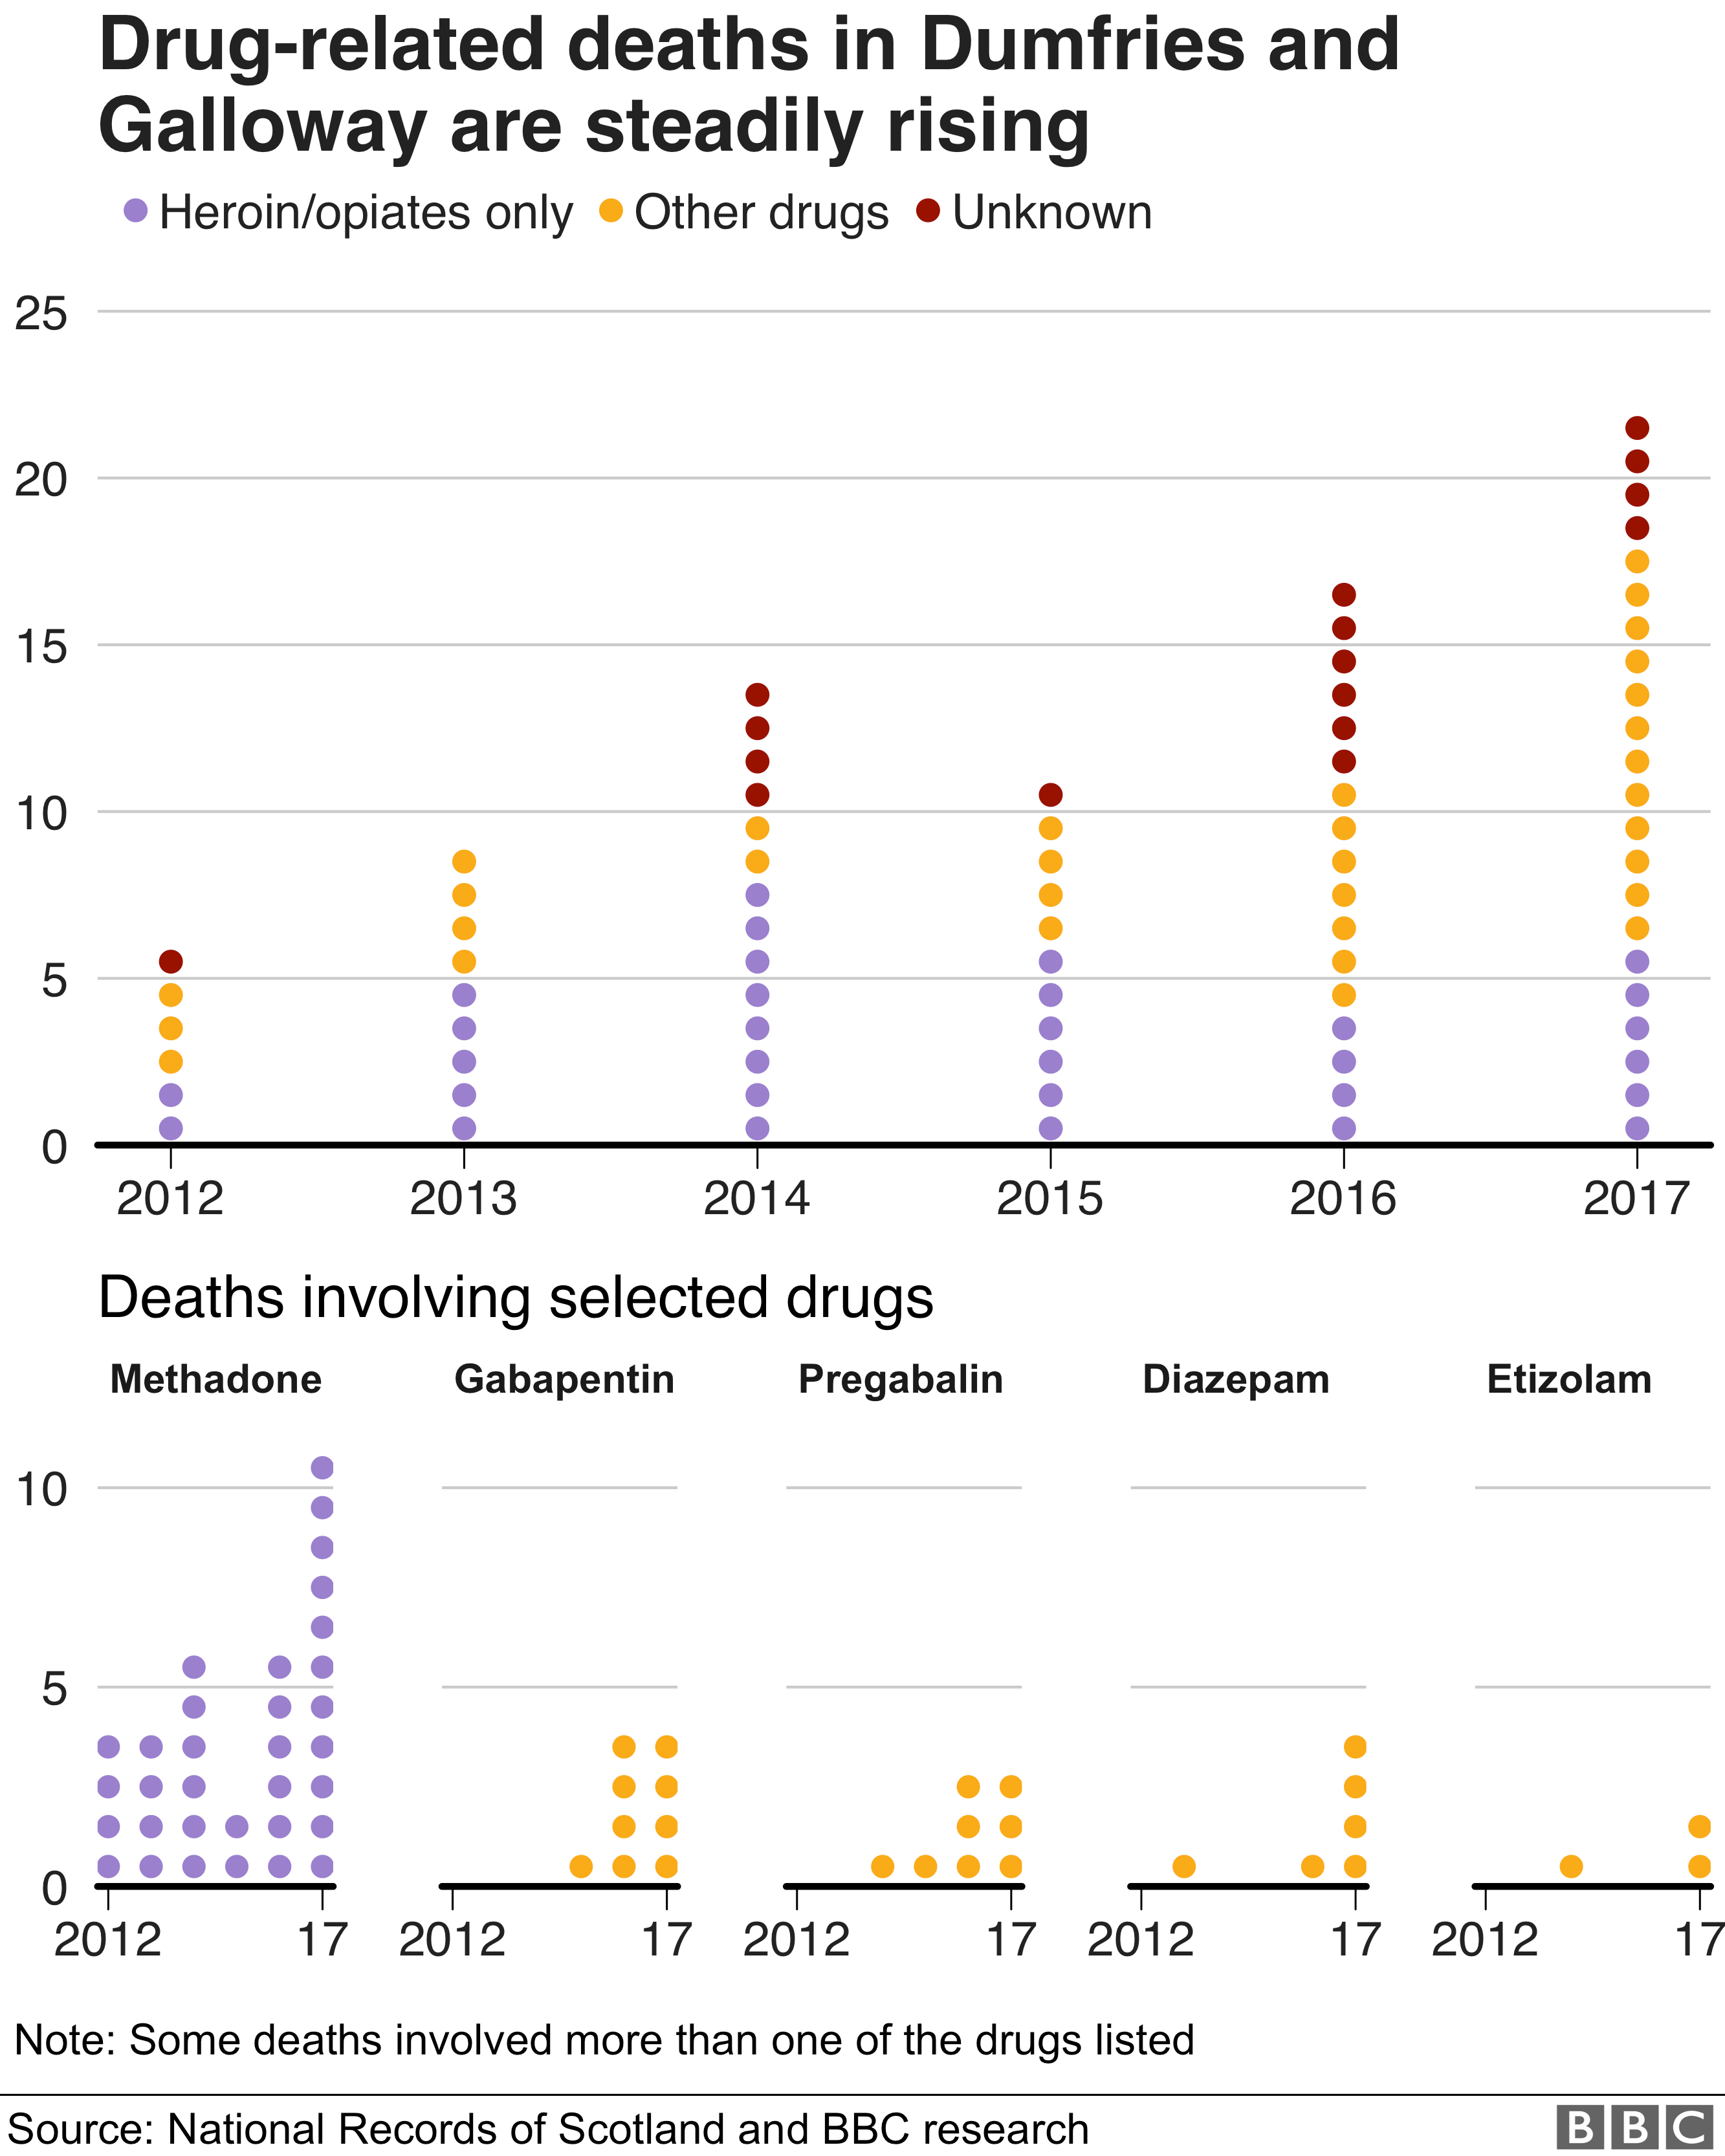 Диаграмма, показывающая, как число смертей, связанных с наркотиками, в Дамфрисе и Галлоуэе неуклонно растет с 2017 года